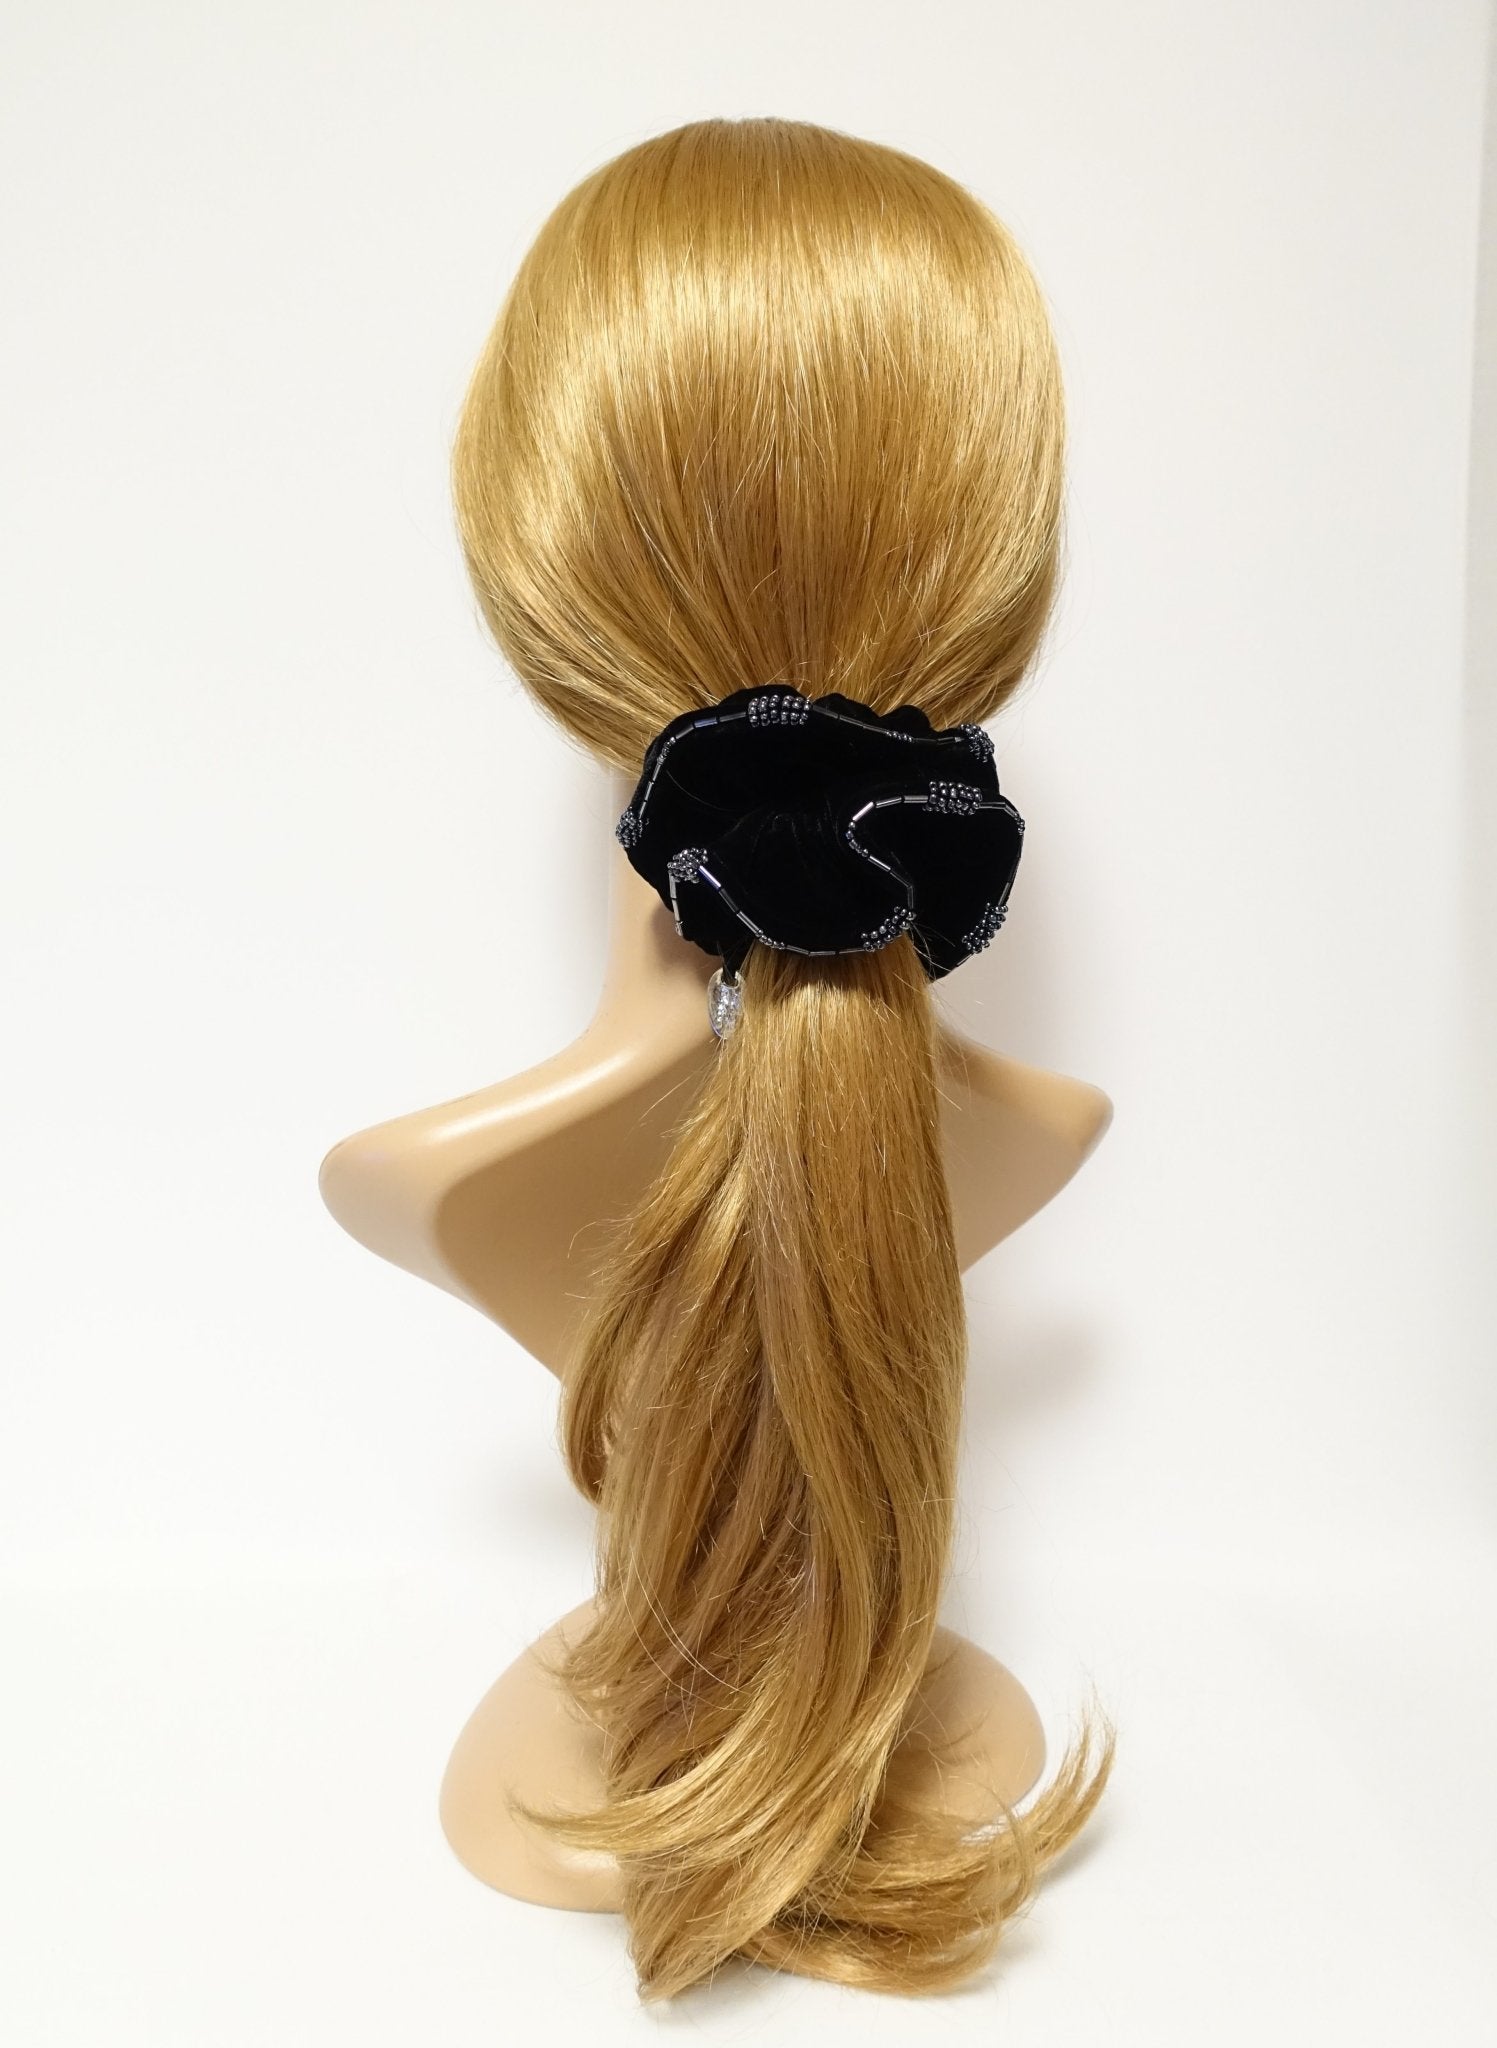 Beaded Trim Luxury Silk Velvet Hair Elastic Black Scrunchies